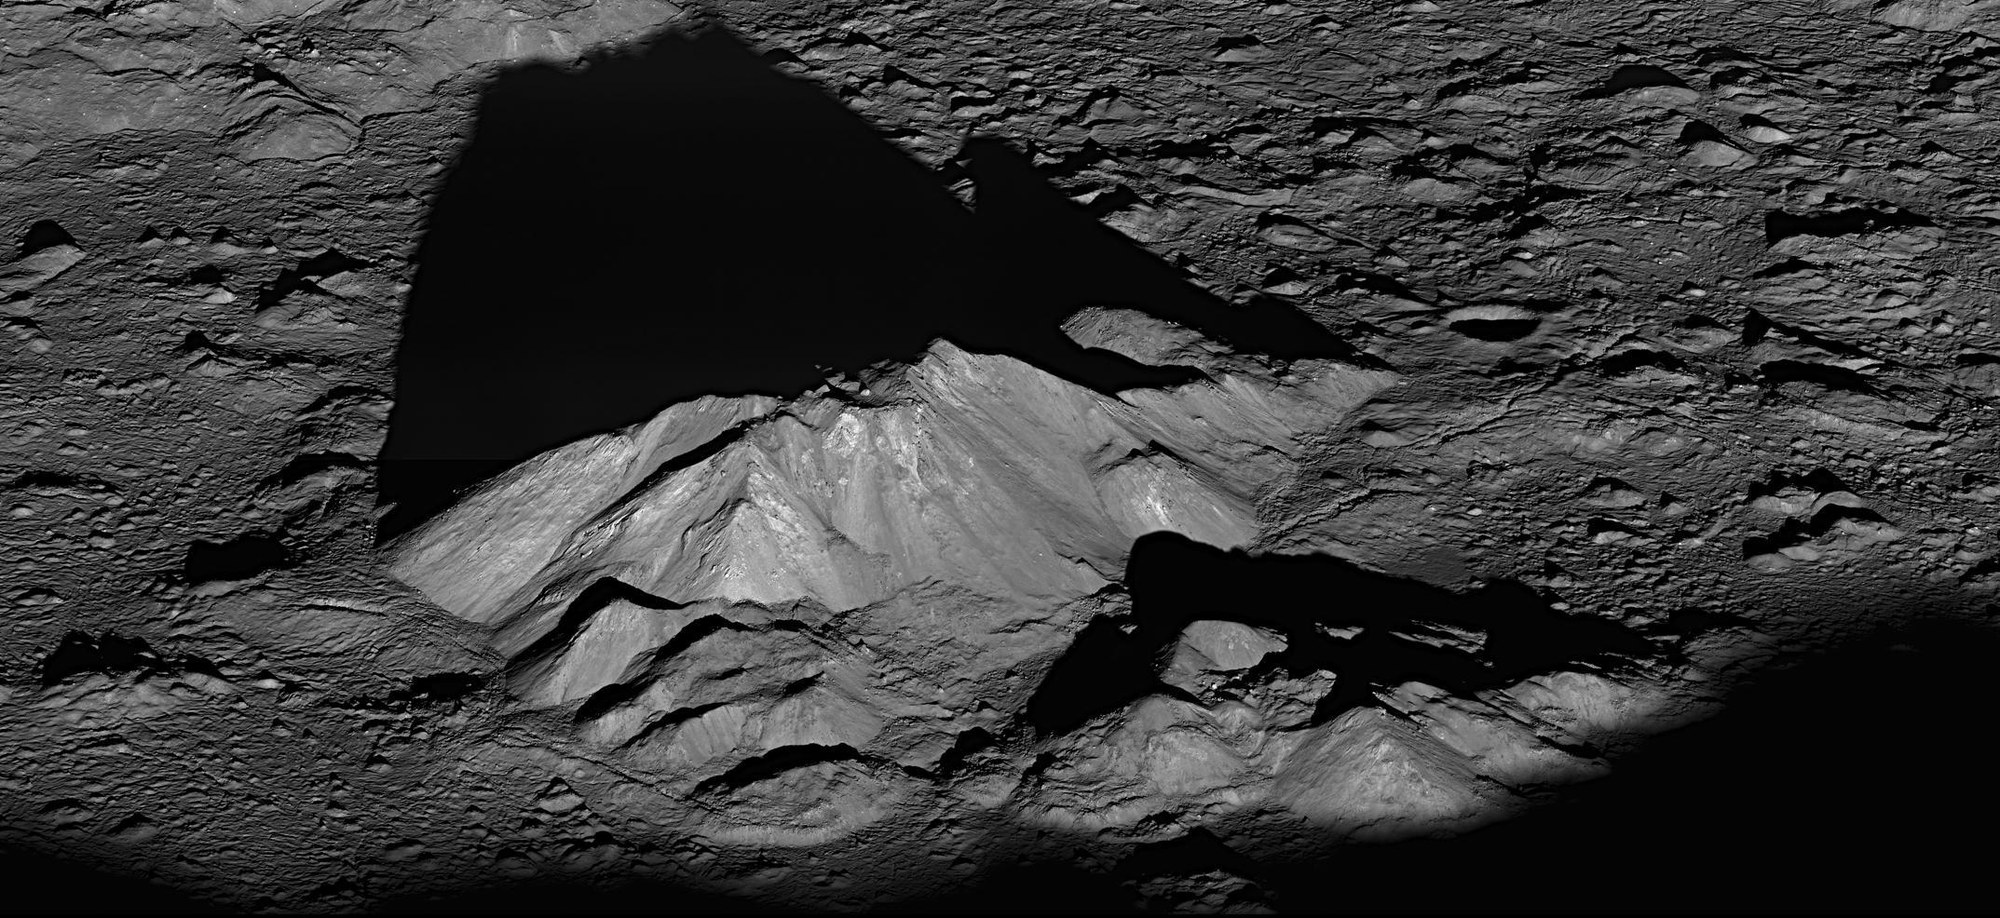 Zu sehen ist hier der zwei Kilometer hohe Zentralberg im Krater Tycho auf dem Mond